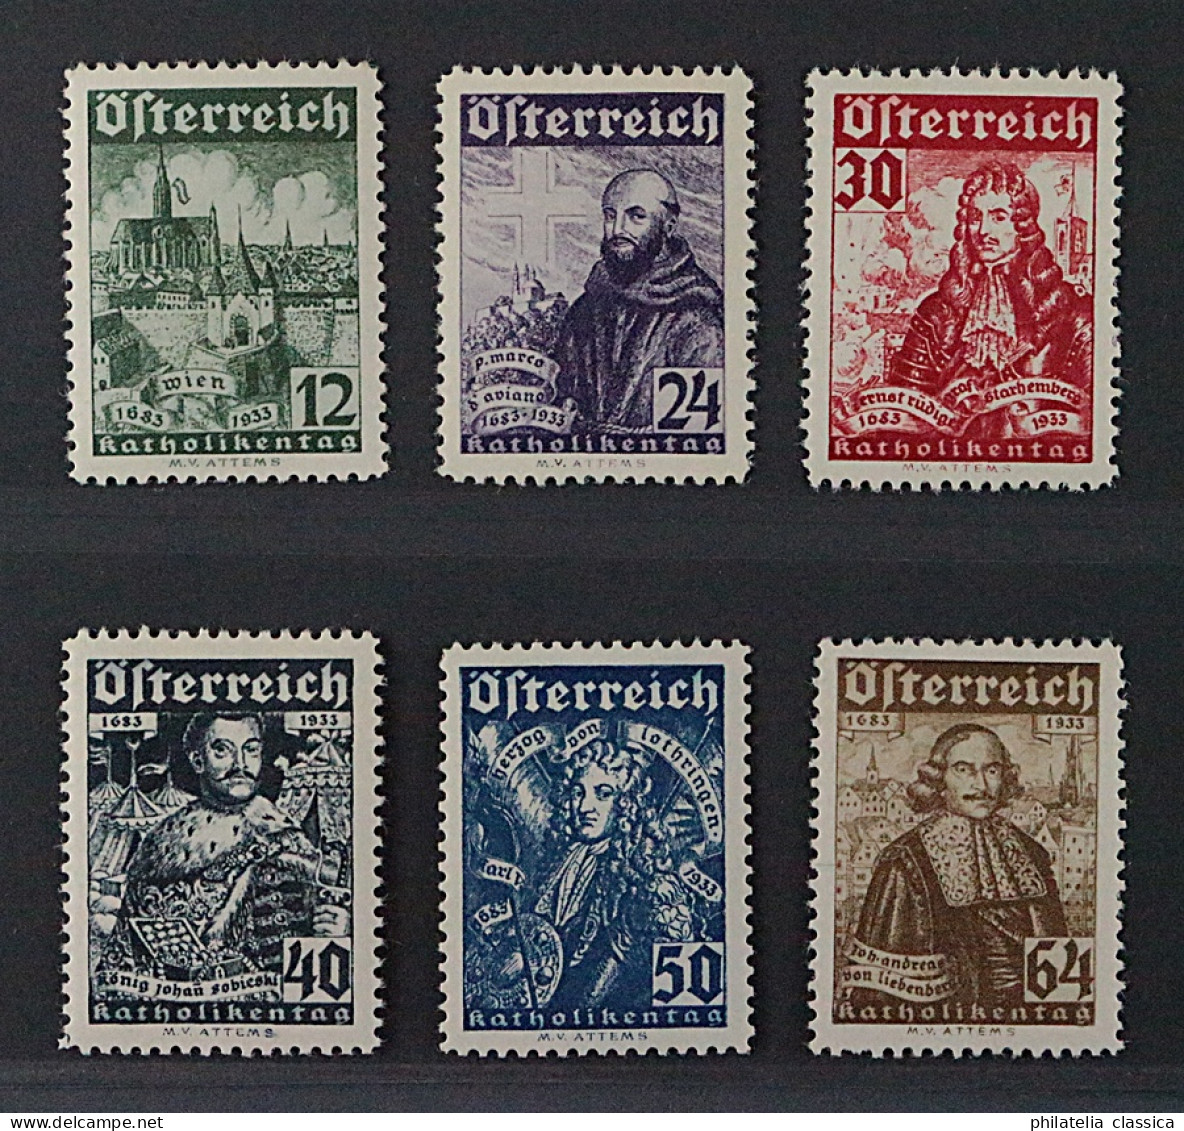 Österreich  557-62 **  Katholikentag 1933, Komplett, Postfrisch, KW 440,- € - Unused Stamps